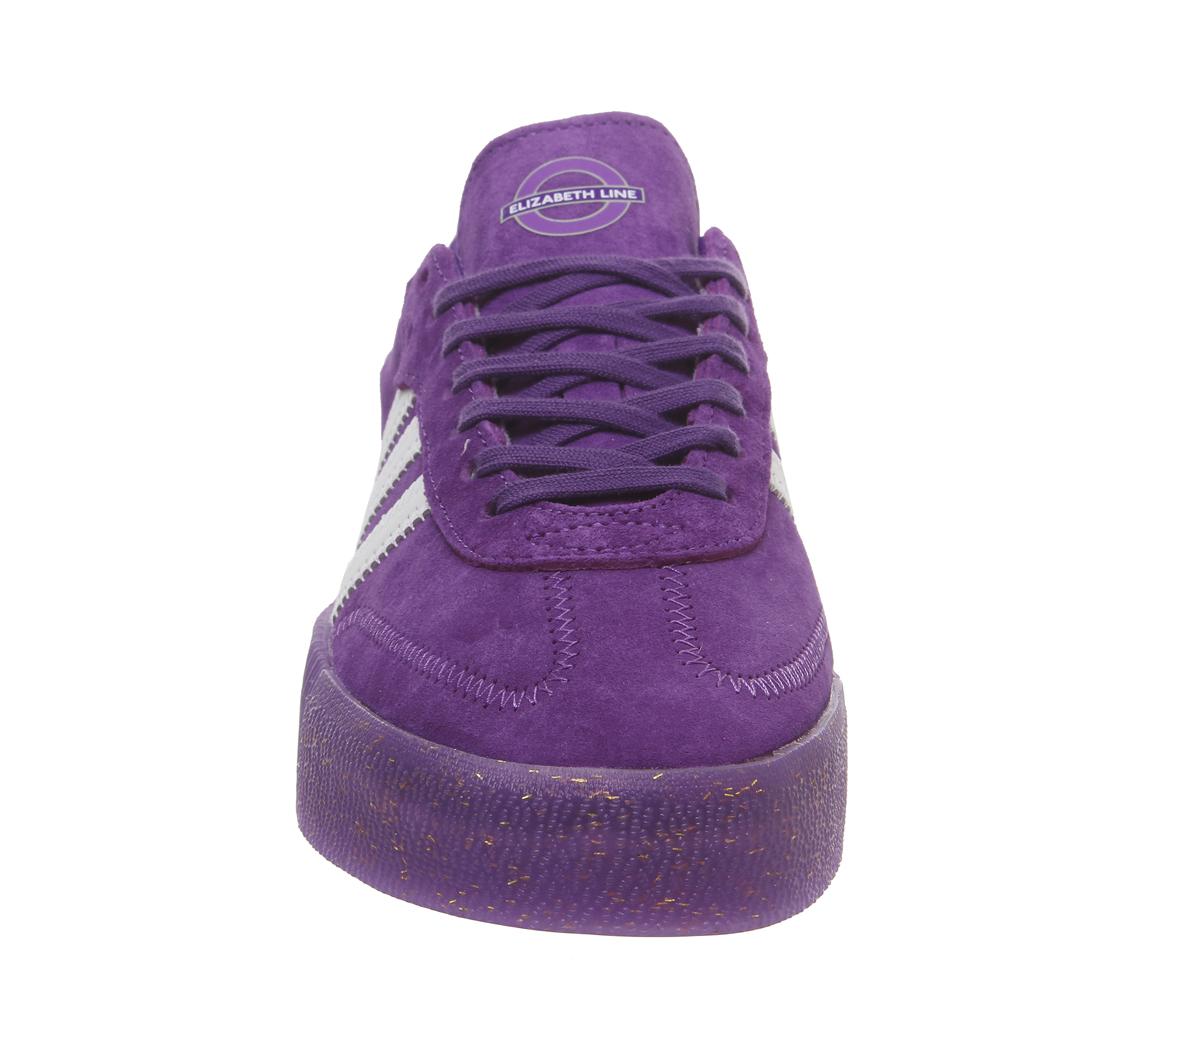 adidas originals tfl samba rose in purple and white